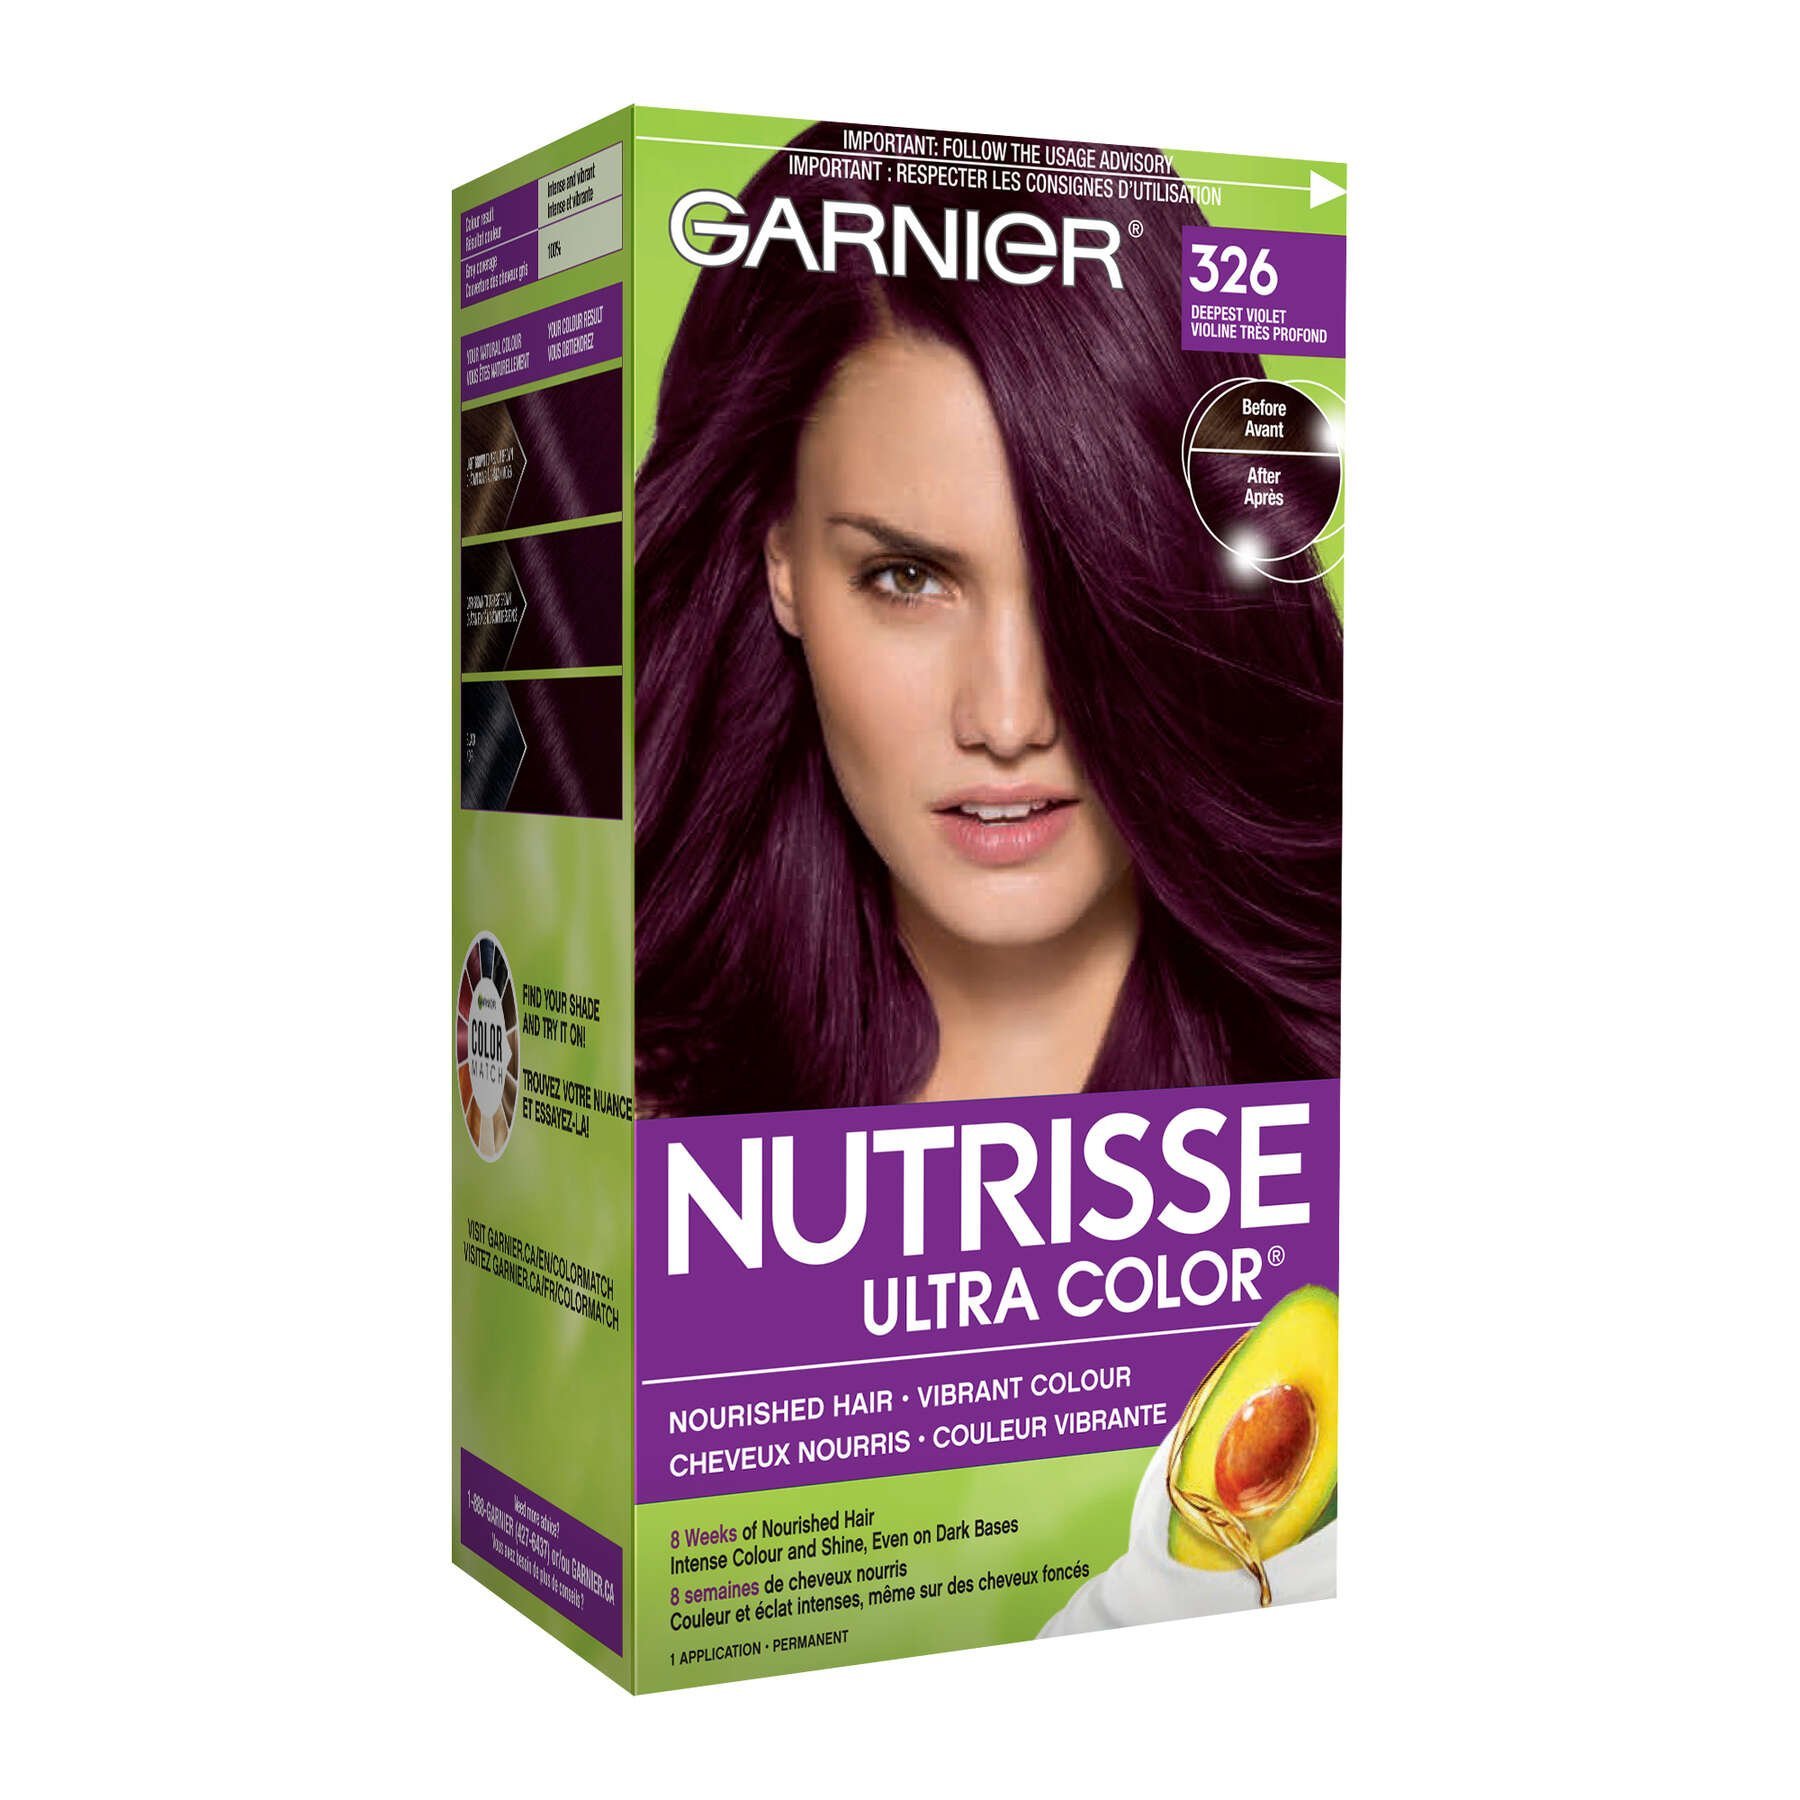 garnier hair dye nutrisse ultra color 326 deepest violet 603084412372 boxed